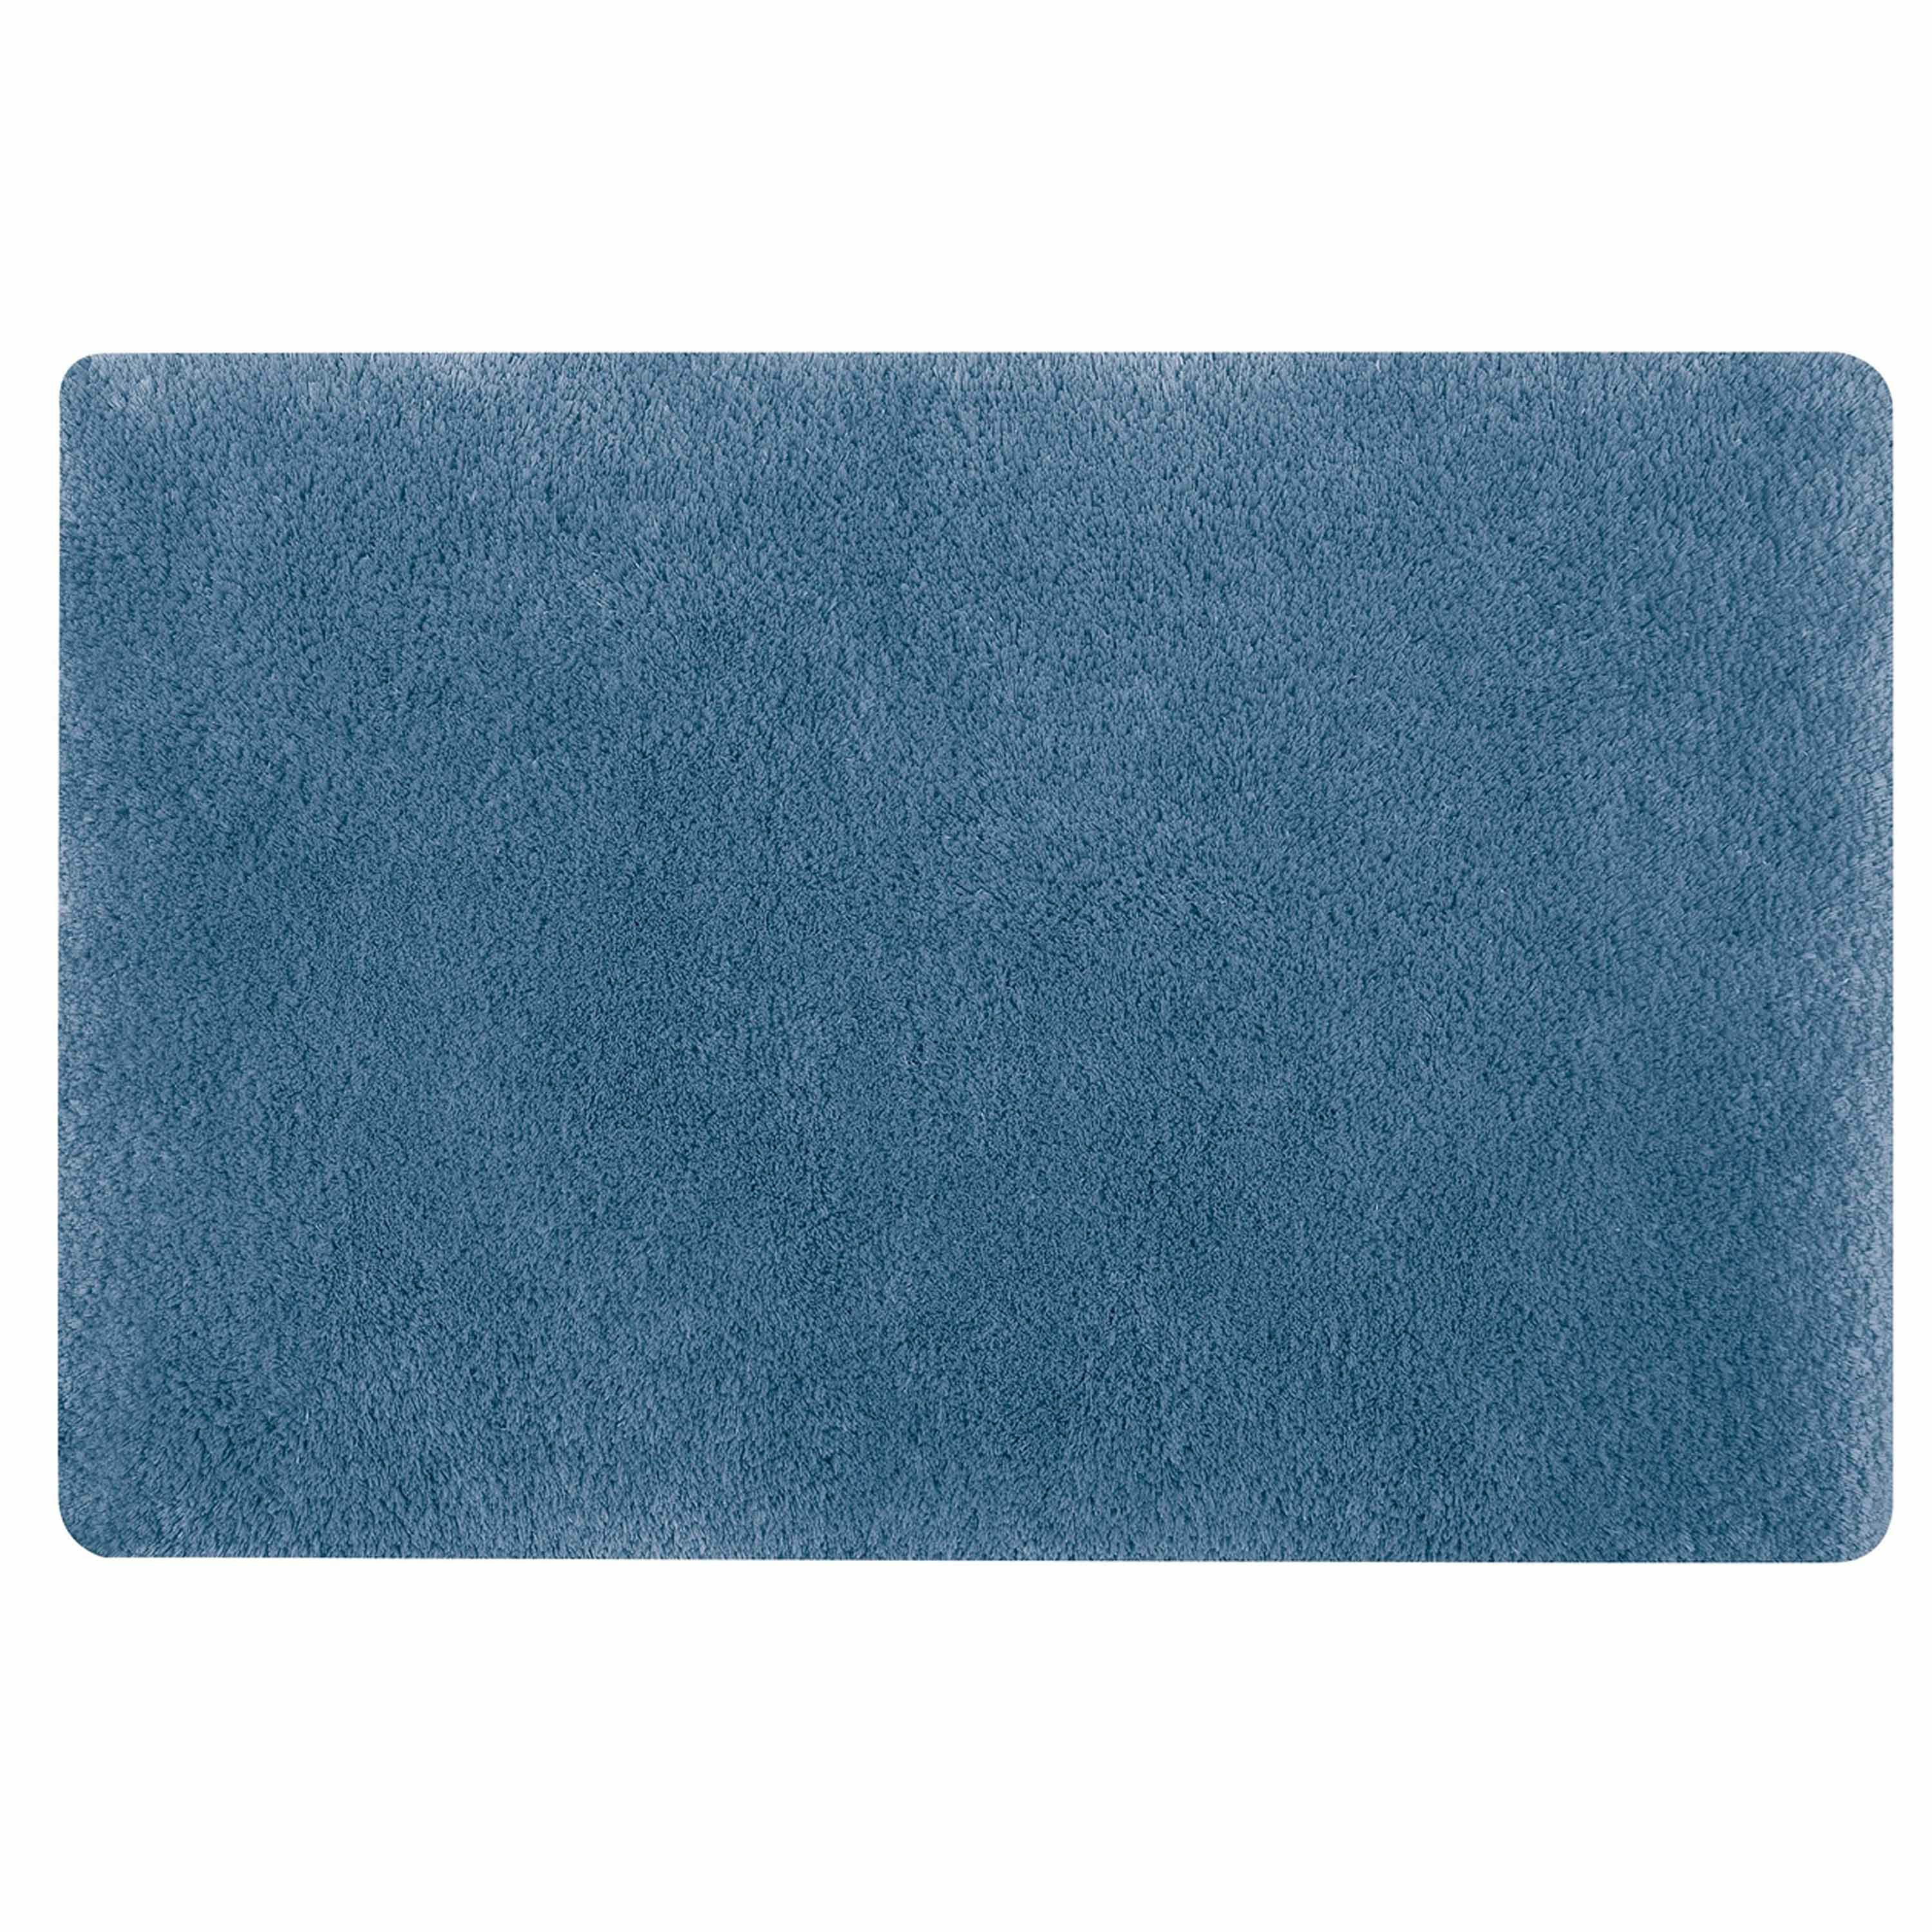 Spirella badkamer vloerkleed-tapijt hoogpolig blauw 40 x 60 cm